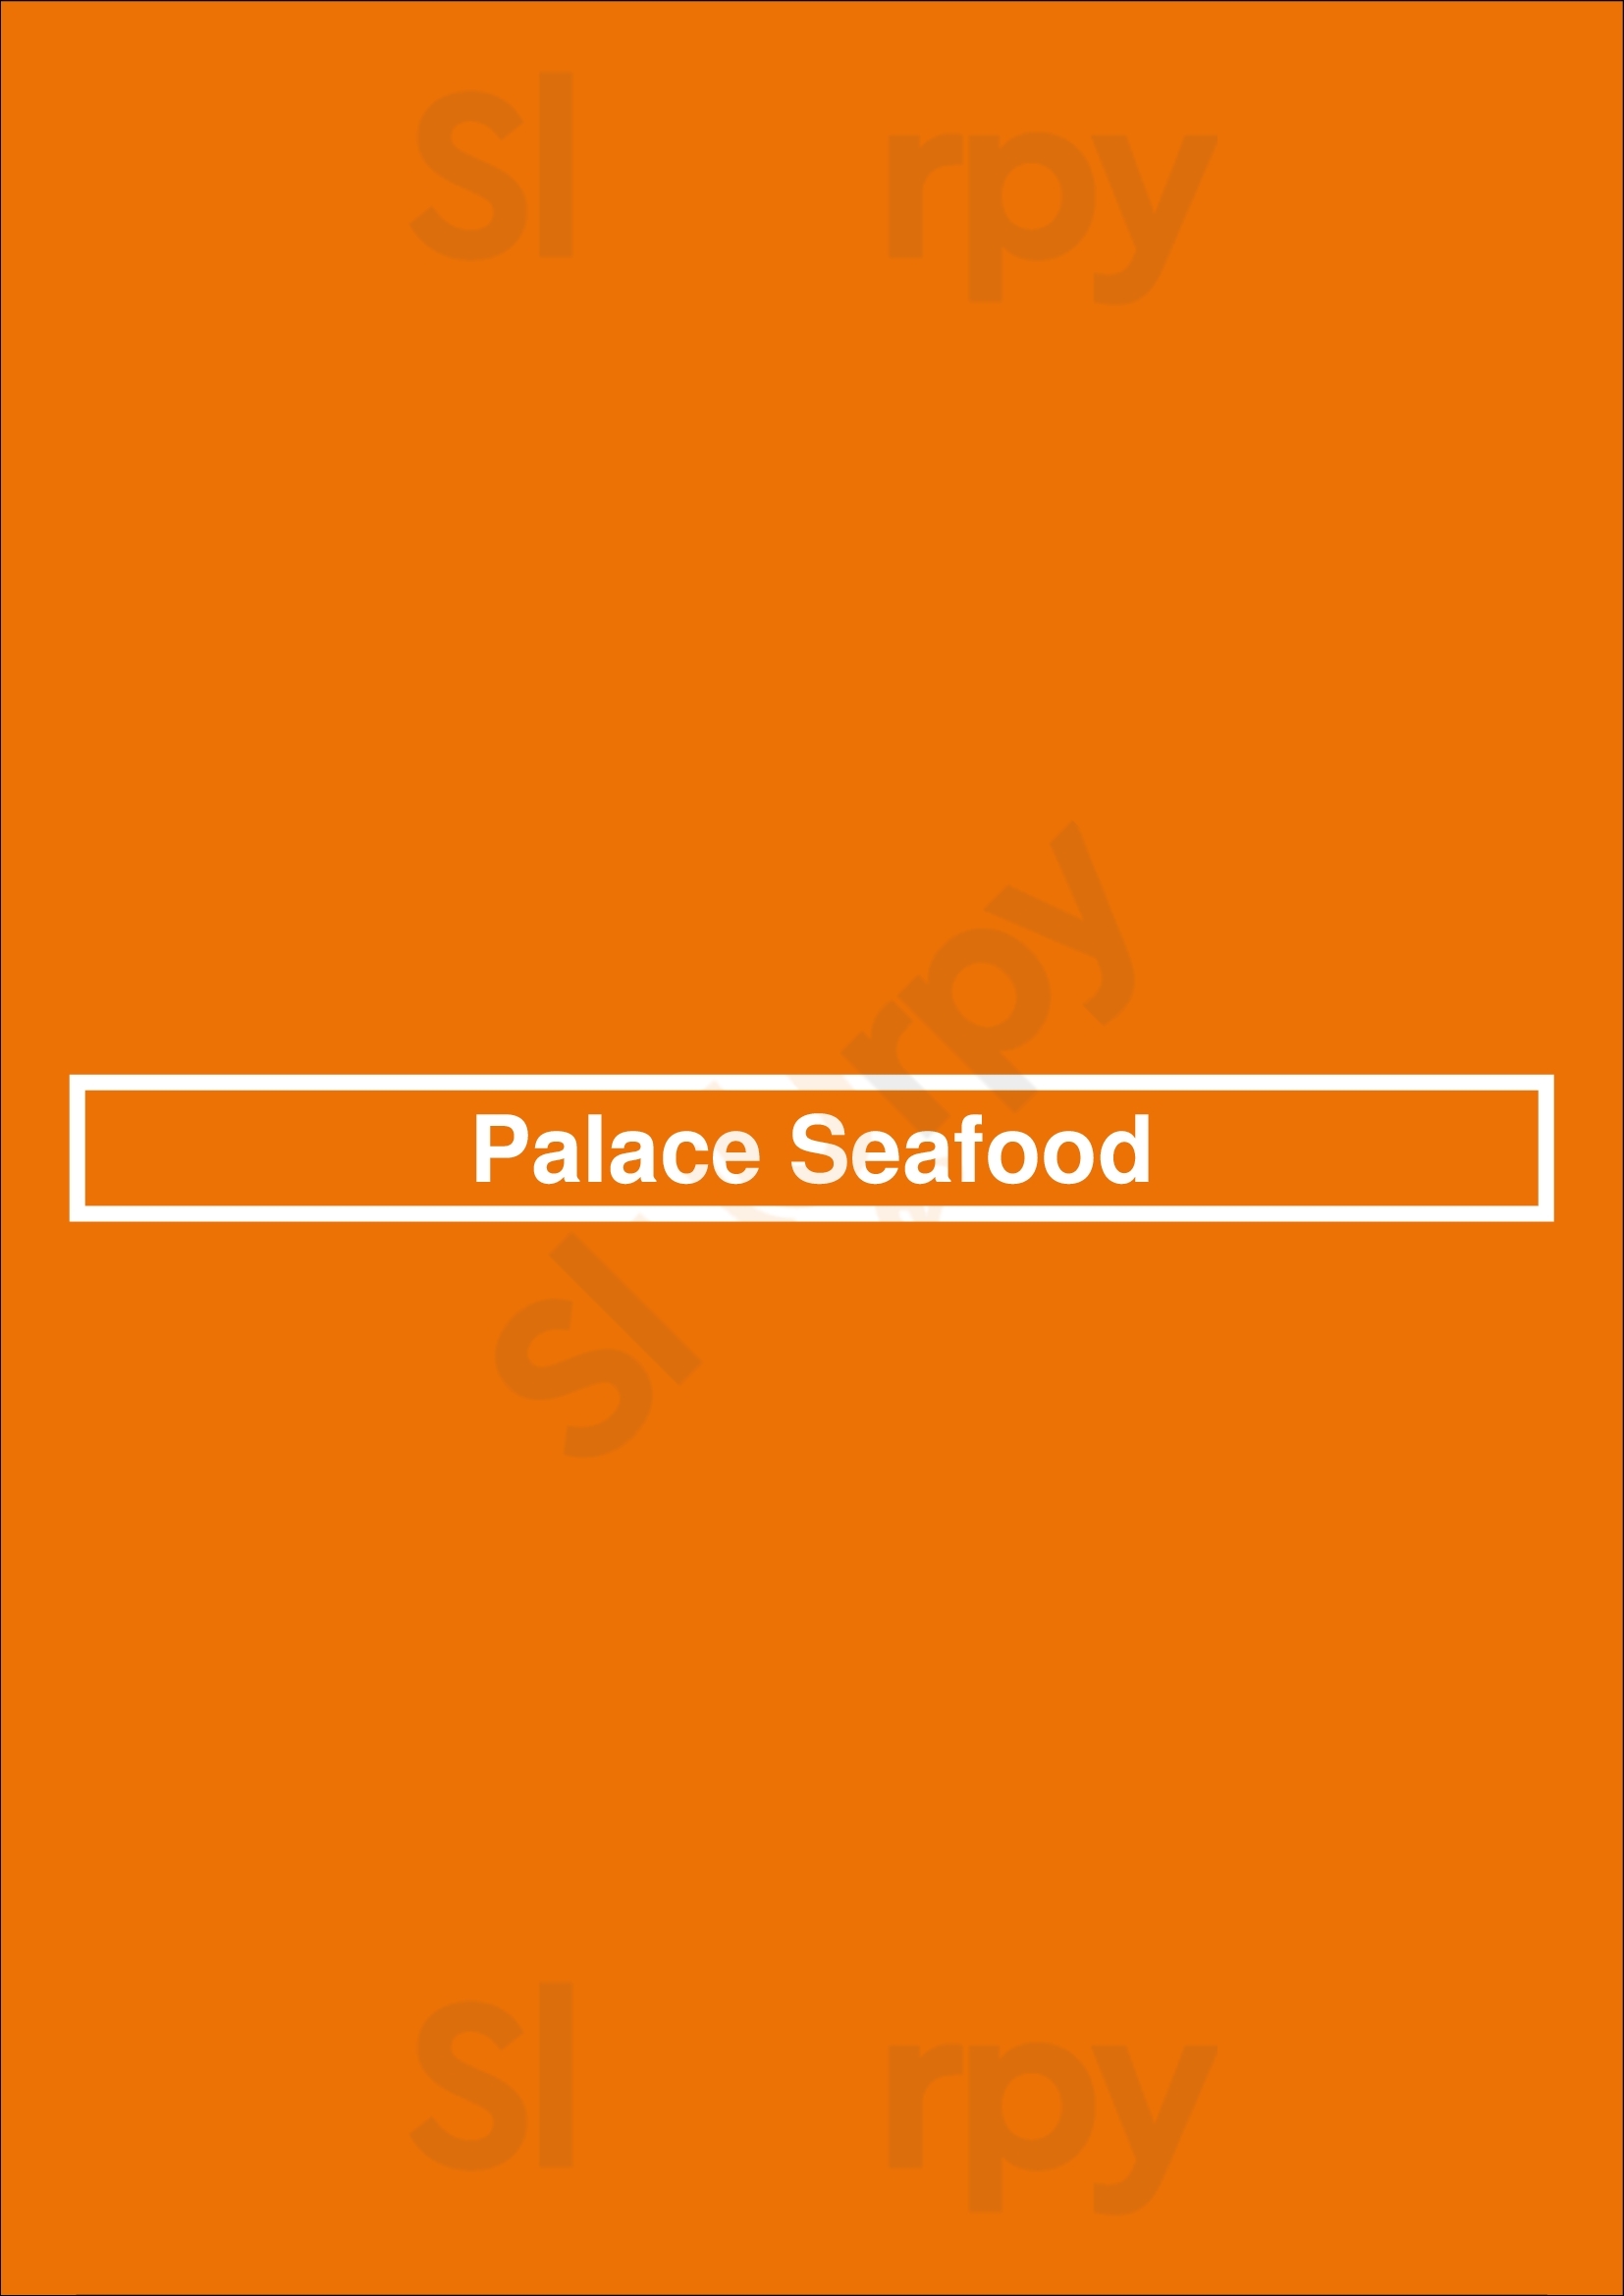 Palace Seafood Knokke Menu - 1